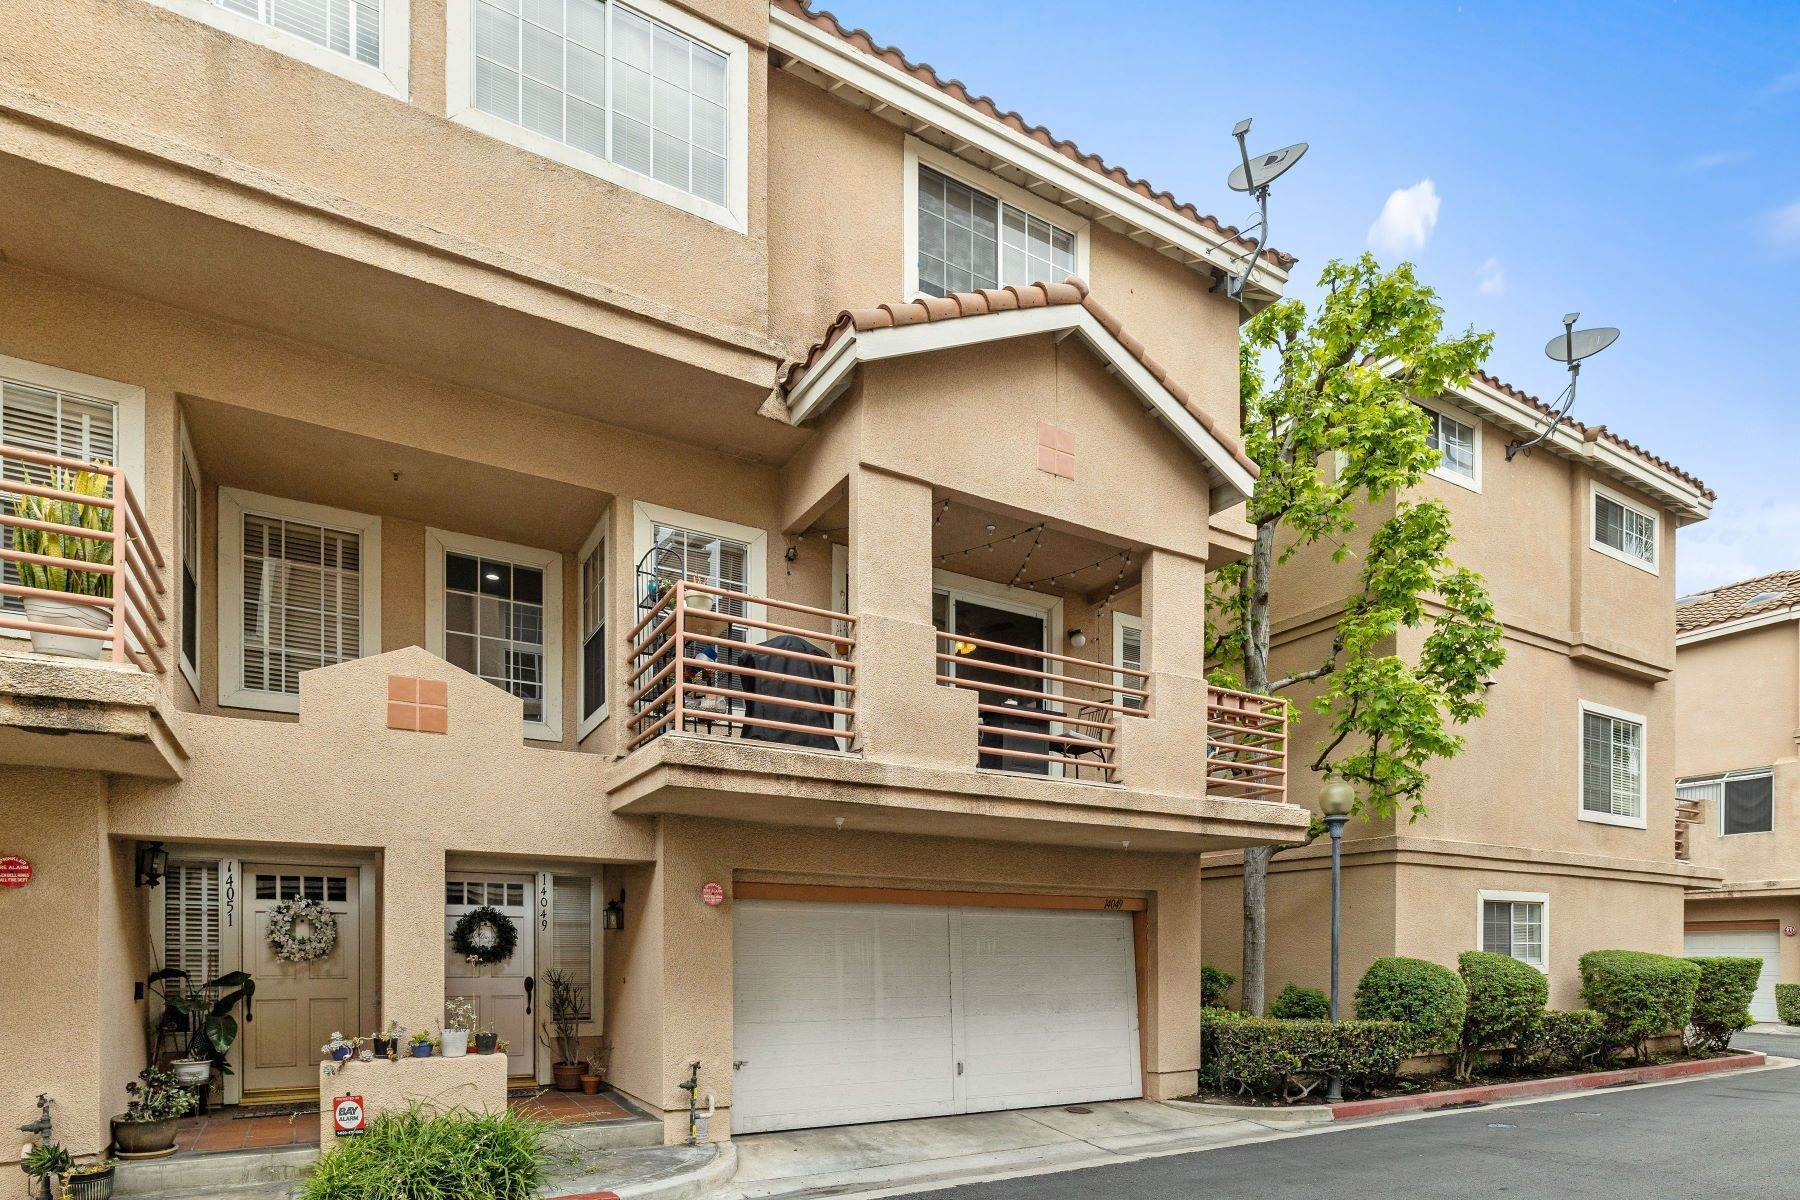 Maison accolée à 14049 Lemoli Avenue, Hawthorne, CA 90250 14049 Lemoli Avenue Hawthorne, Californie 90250 États-Unis